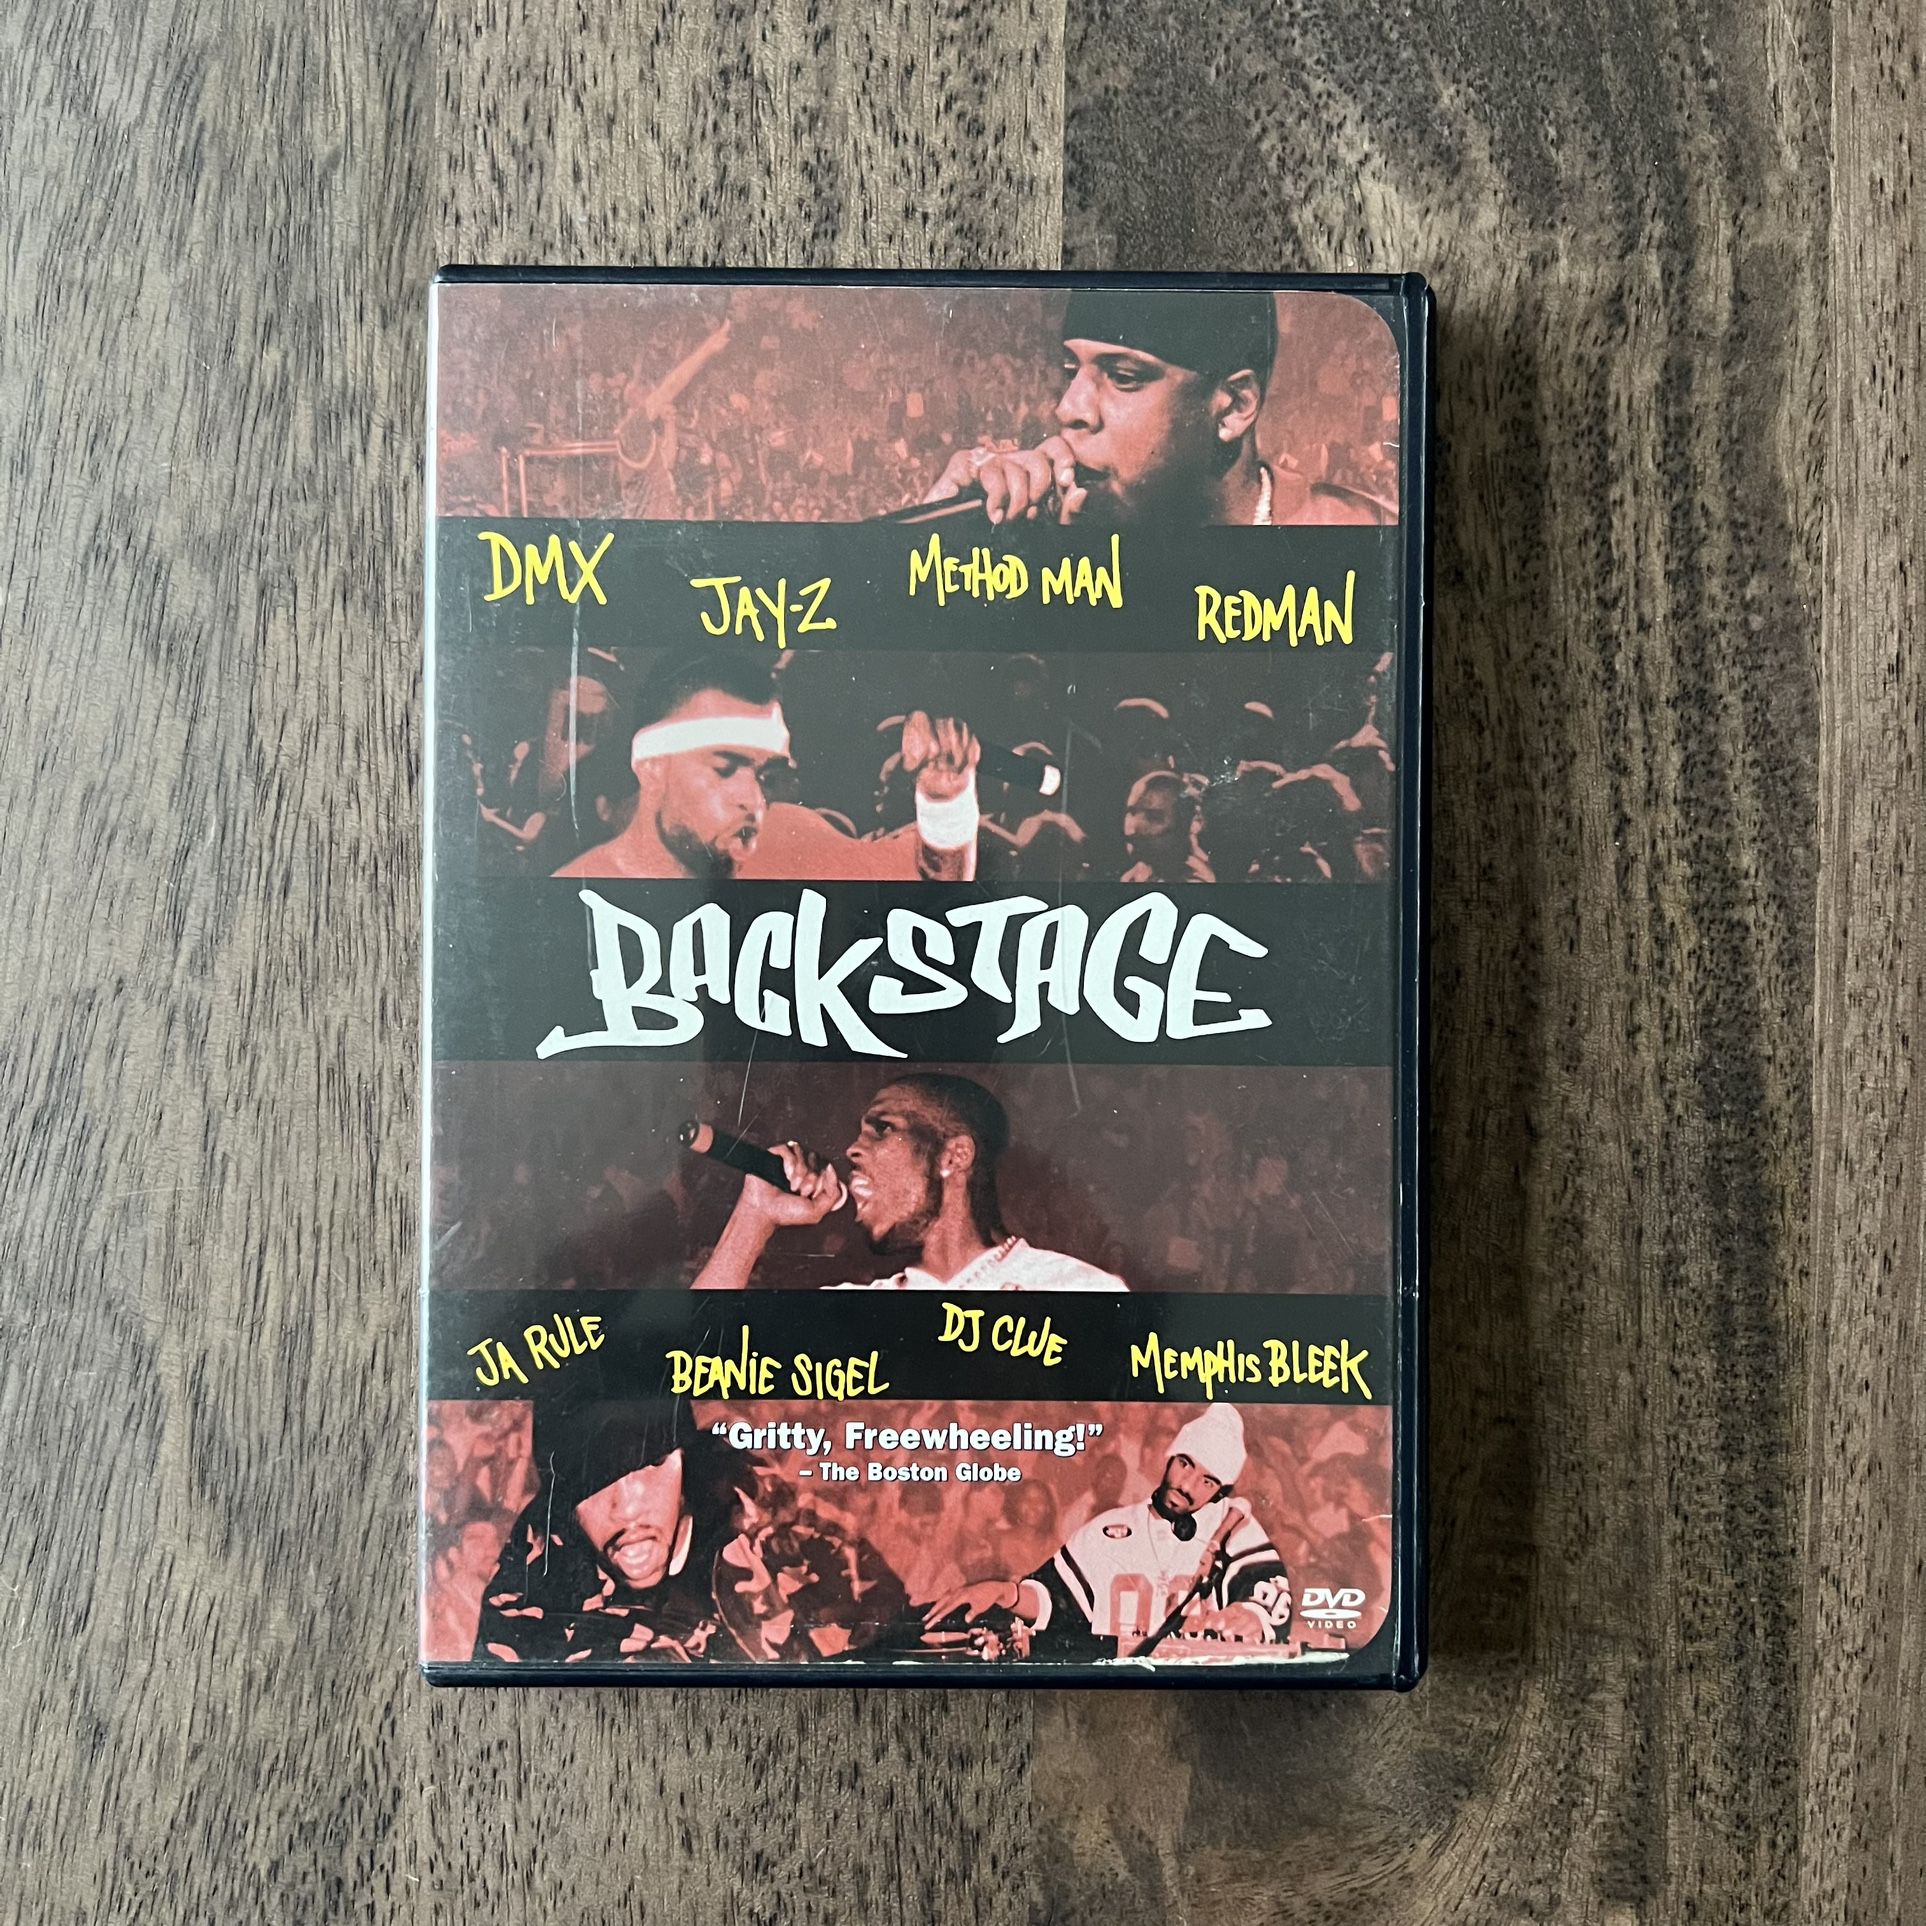 Vintage VTG 2000s Y2K Backstage Hip-Hop Rap Music Concert DVD Movie